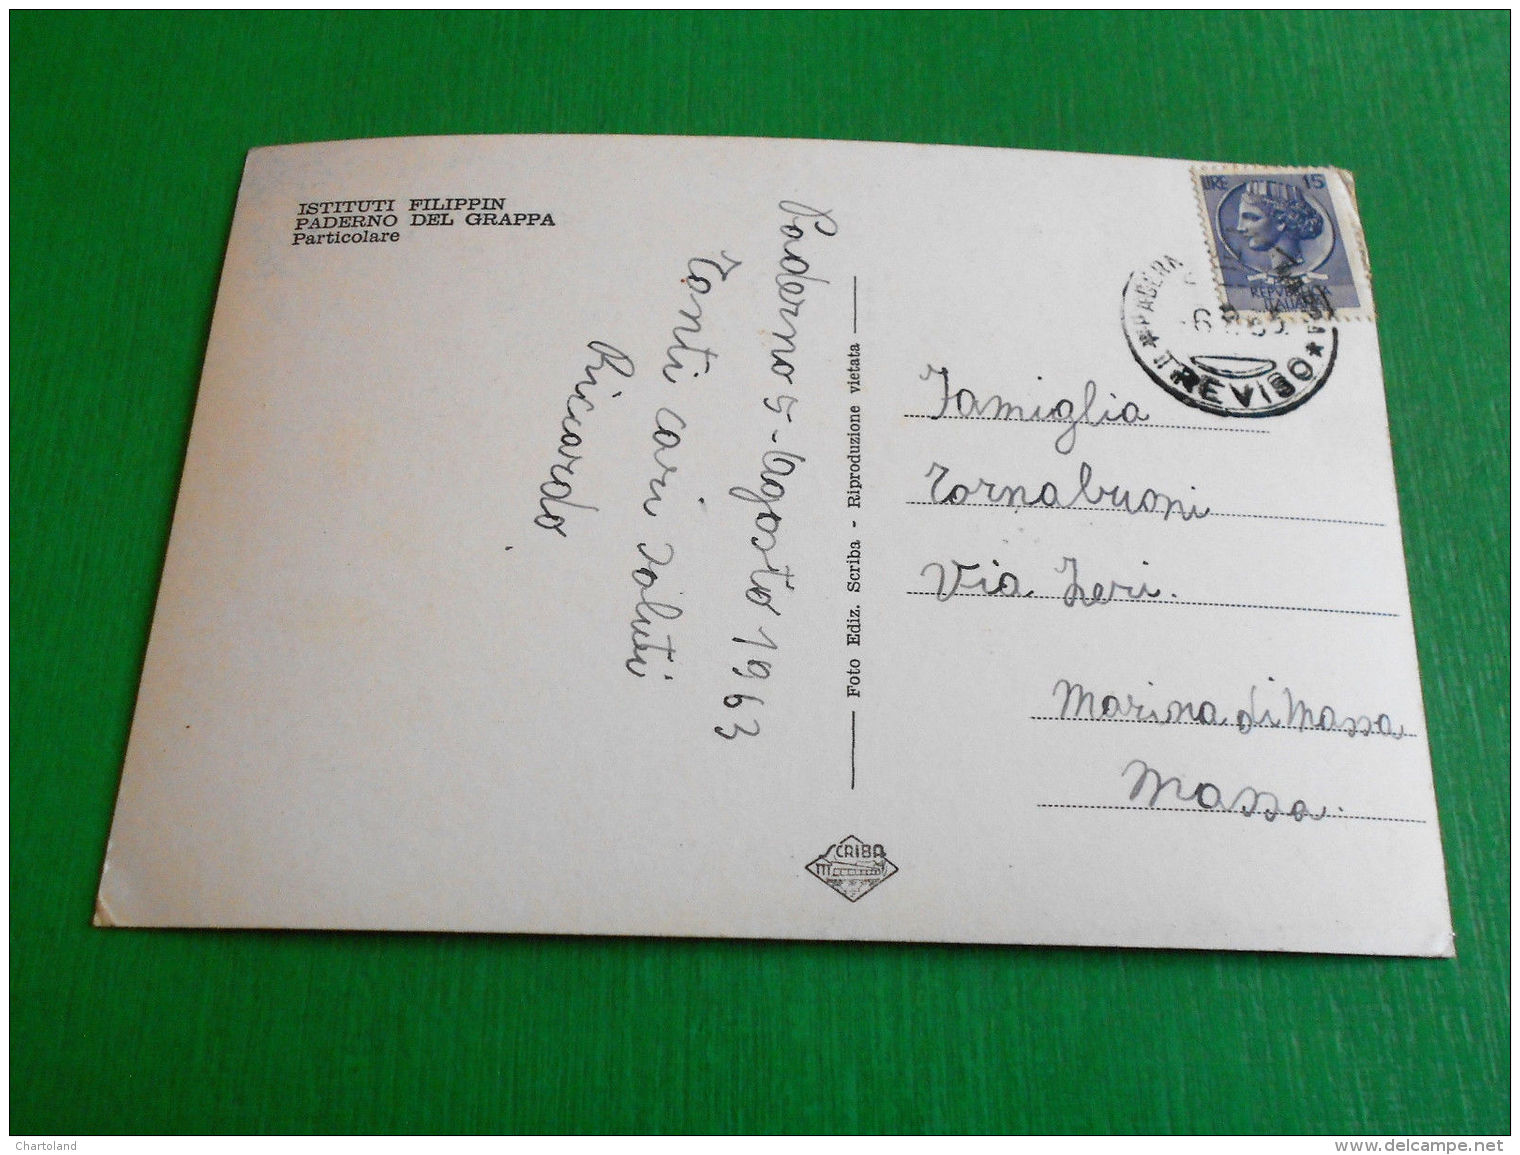 Cartolina Paderno Del Grappa - Istituto Filippin - Particolare 1963 - Treviso